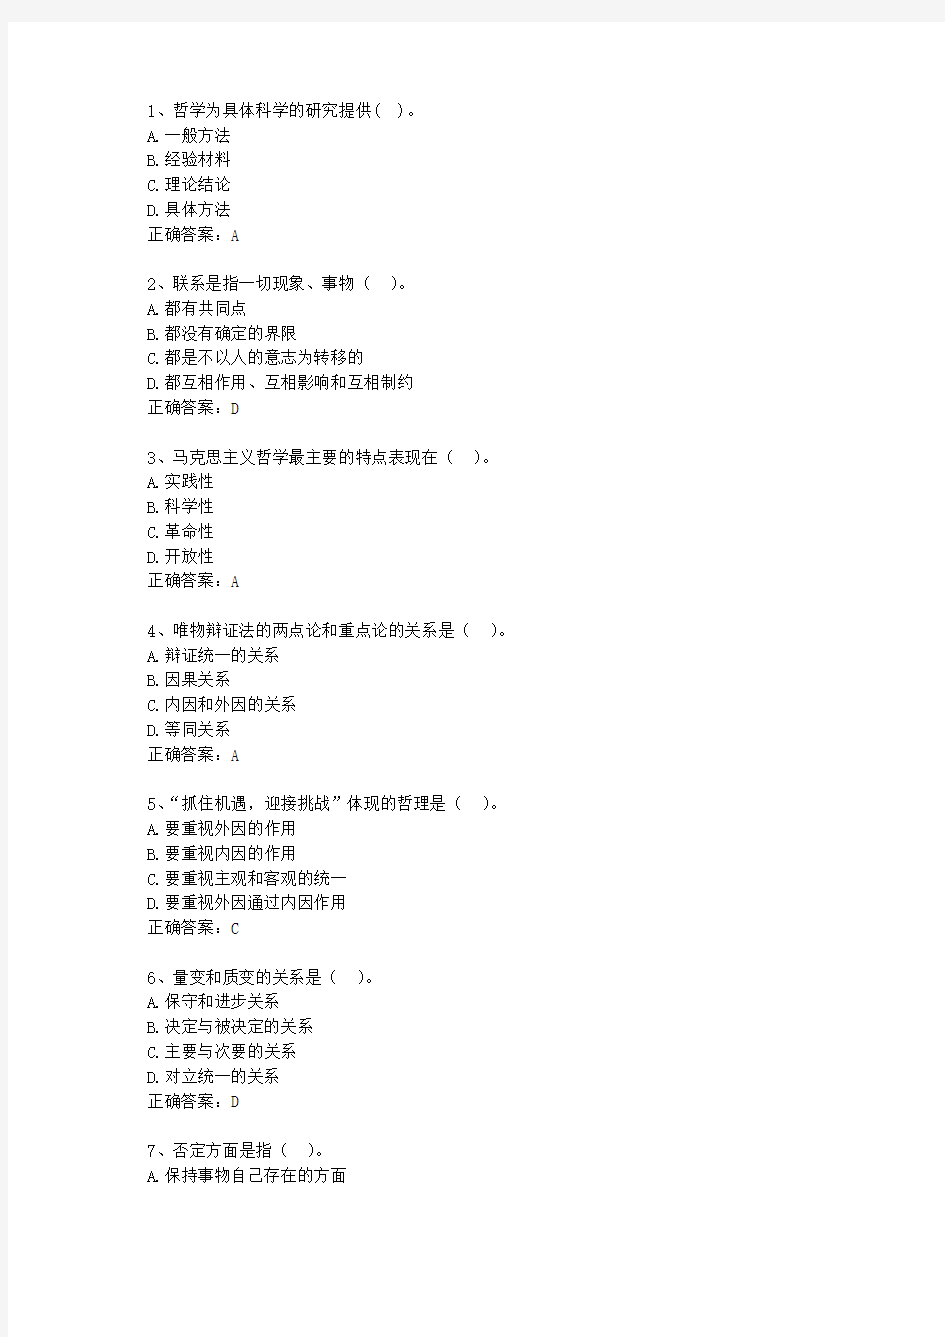 2013台湾省事业单位招聘考试公共基础知识最新考试试题库